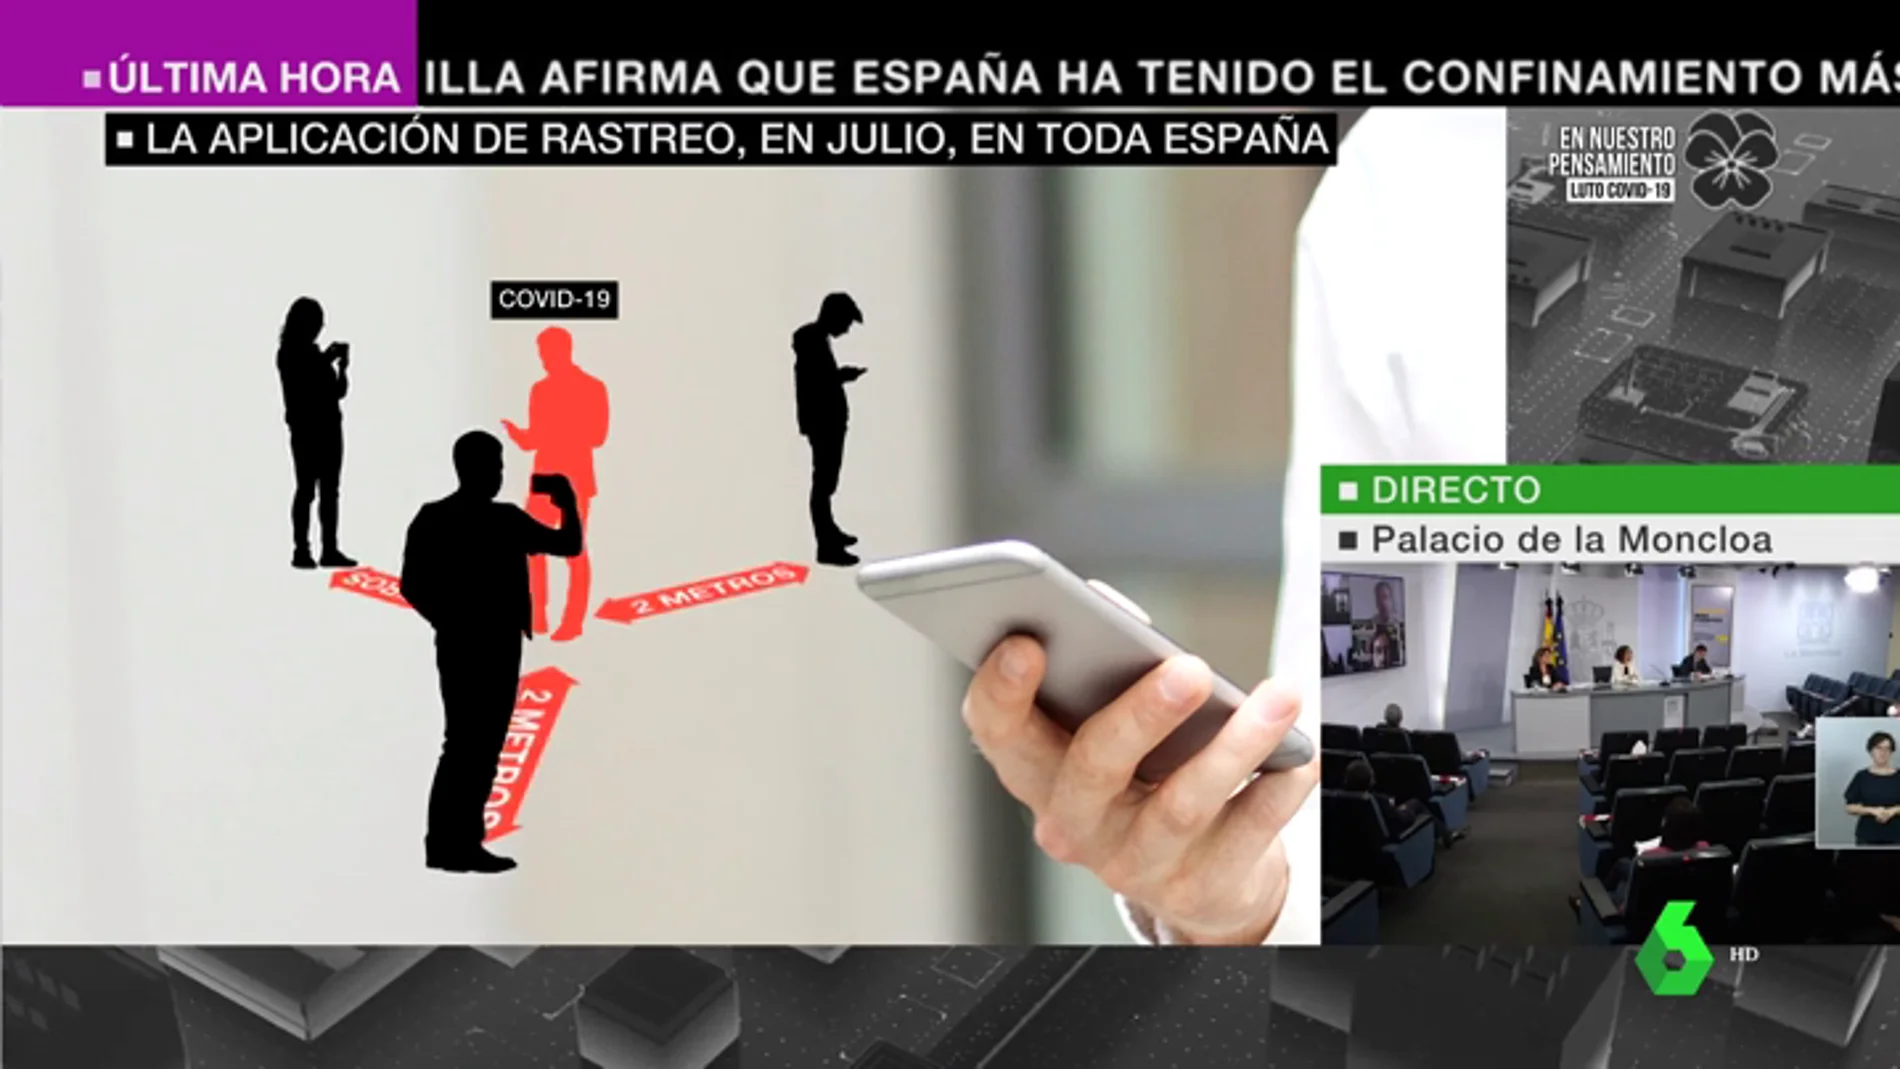 Así será la aplicación de rastreo de coronavirus que estará disponible en España en julio: avisa de los contactos contagiados